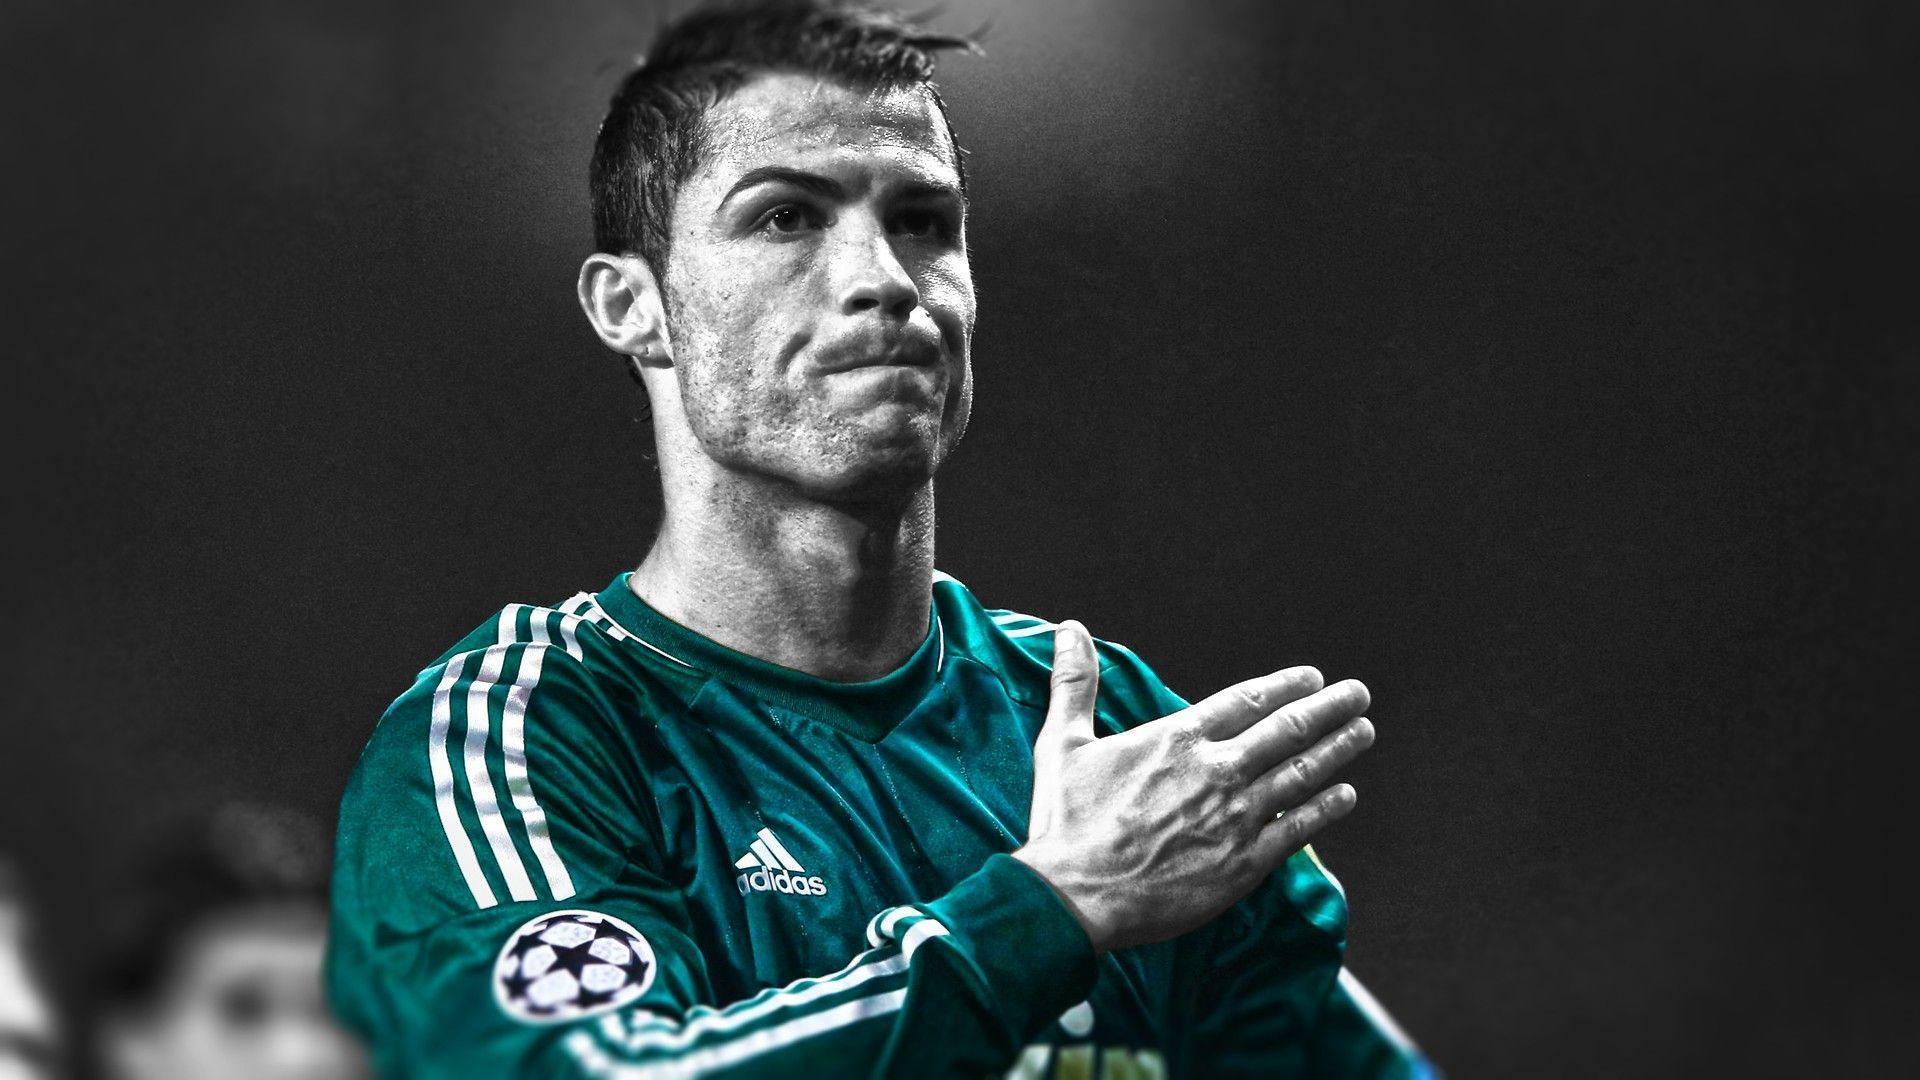 Chia sẻ 100 hình nền đẹp của Cristiano Ronaldo full HD - [Kích thước hình ảnh: 1920x1080 px]